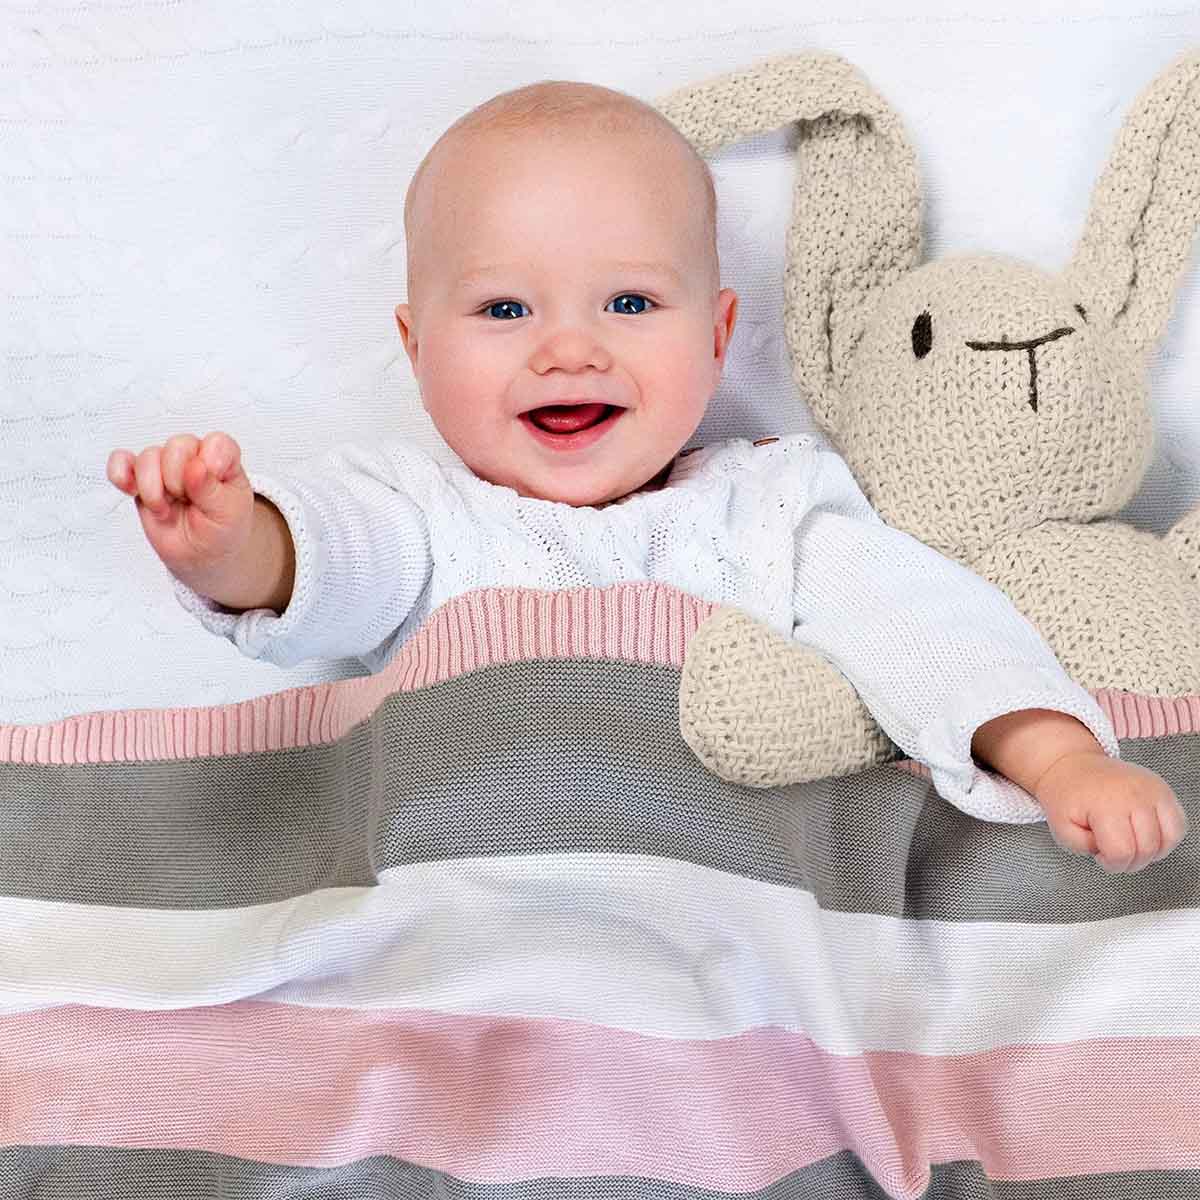 Glückliches Baby liegt im Bett, eingedeckt in rosa-grau-weiß gestreifter Bio-Baumwolldecke. Es lächelt und winkt in die Kamera.